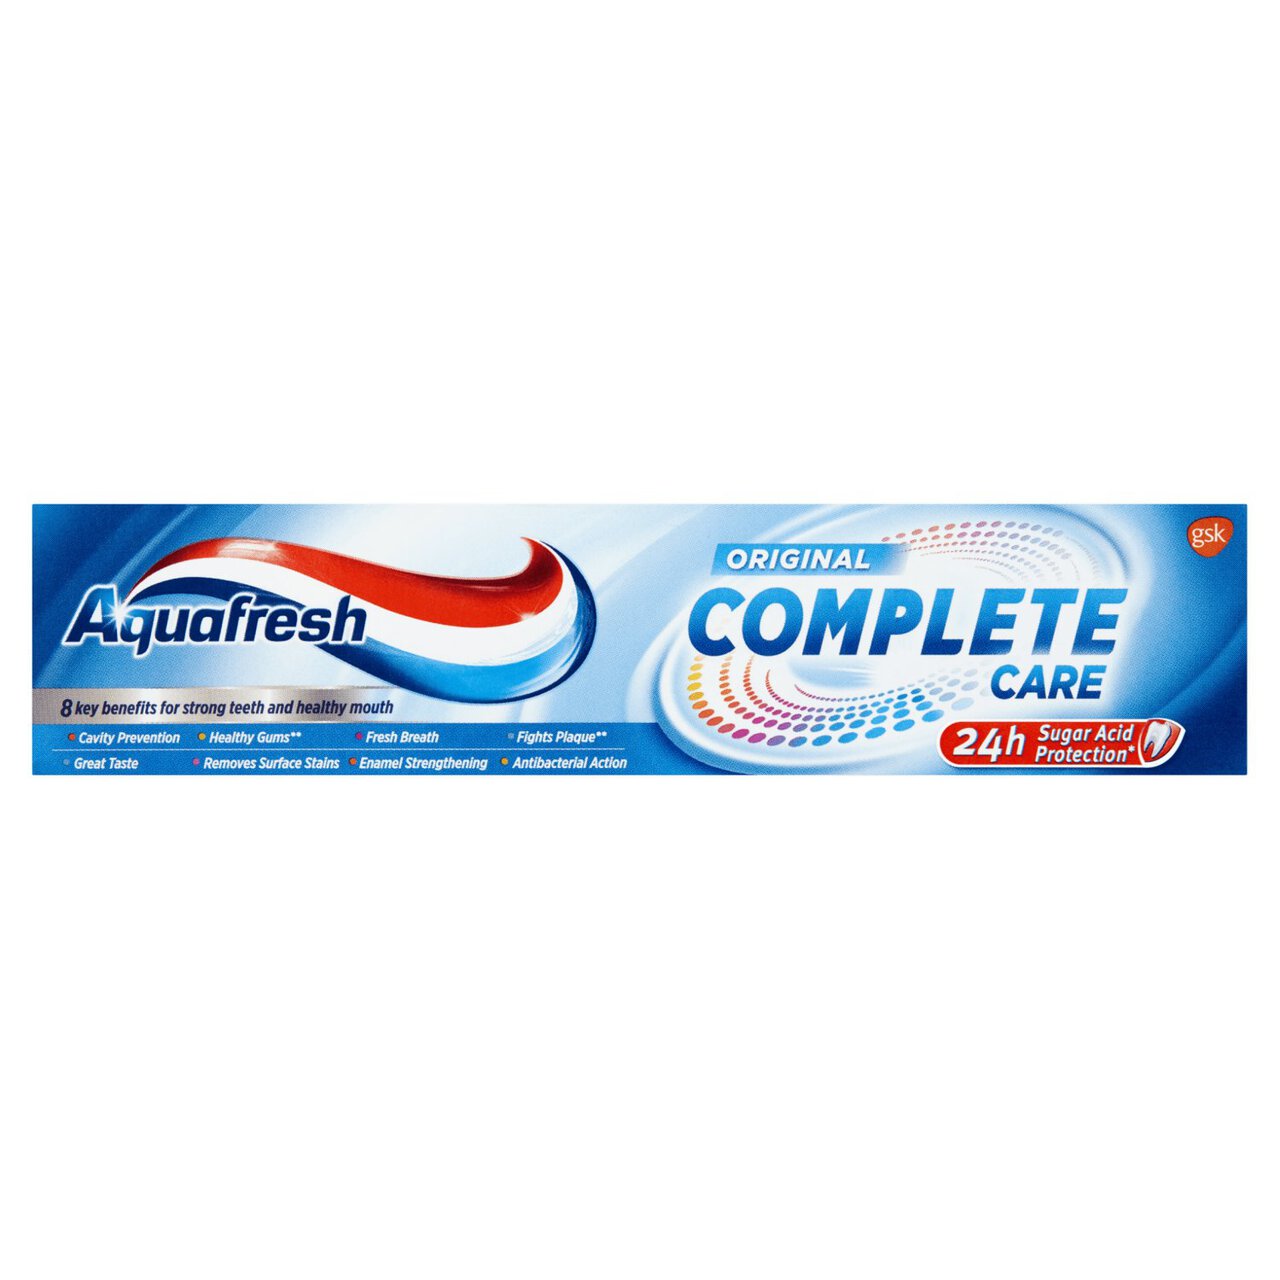 Aquafresh Complete Care Original Toothpaste 100ml